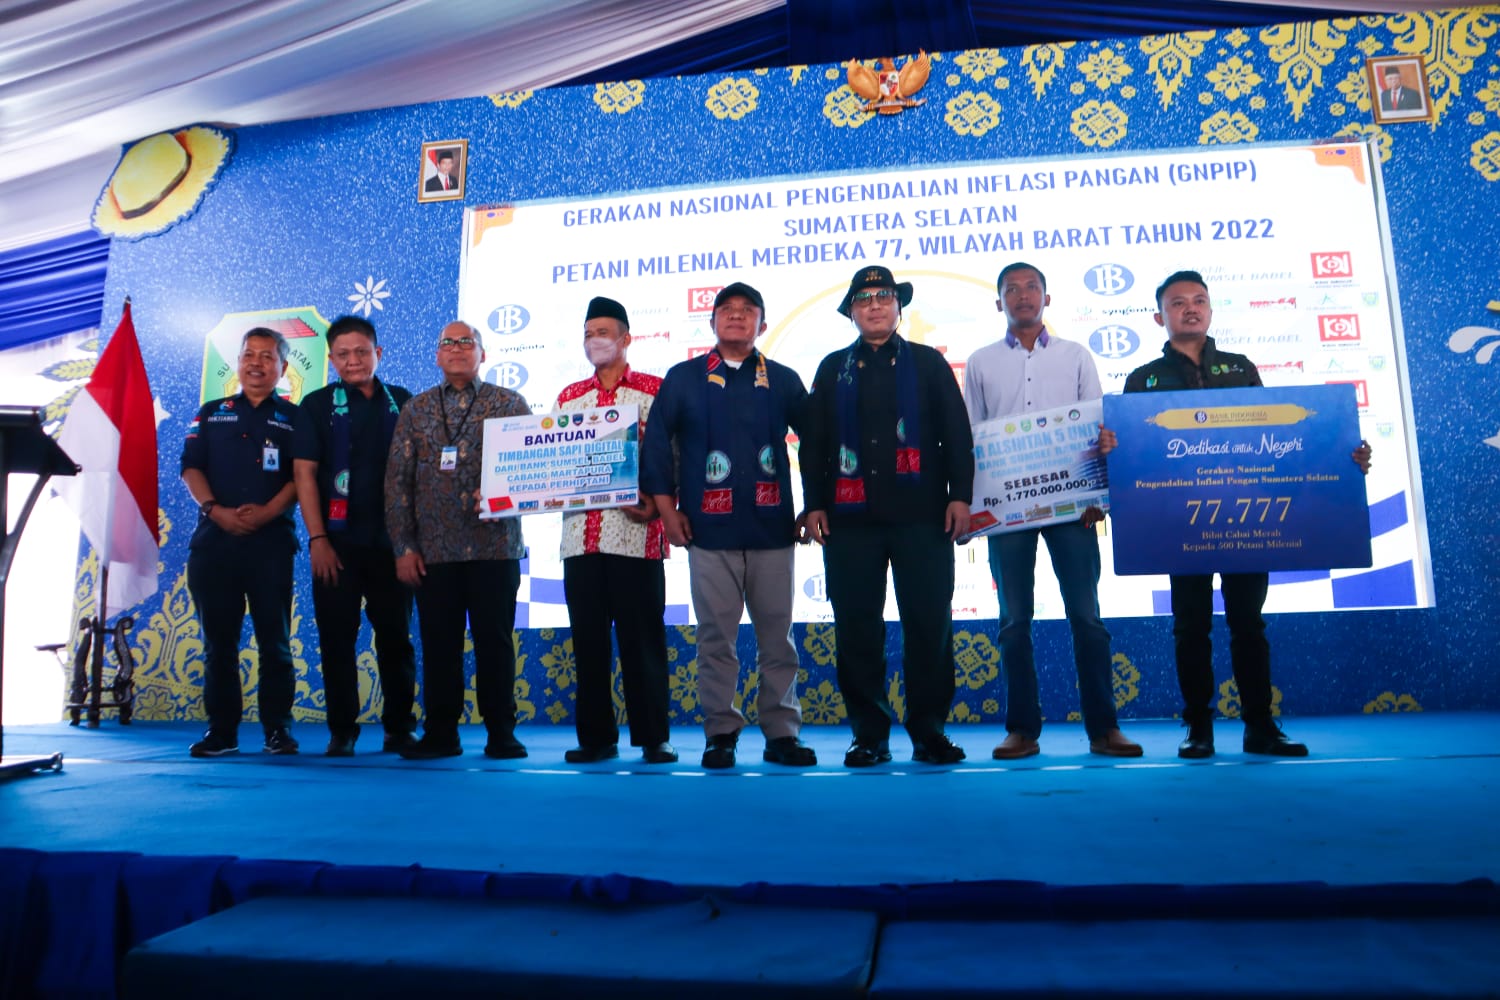 BI Sumsel Berikan 77.777 Bibit Cabai Merah kepada Petani Milenial